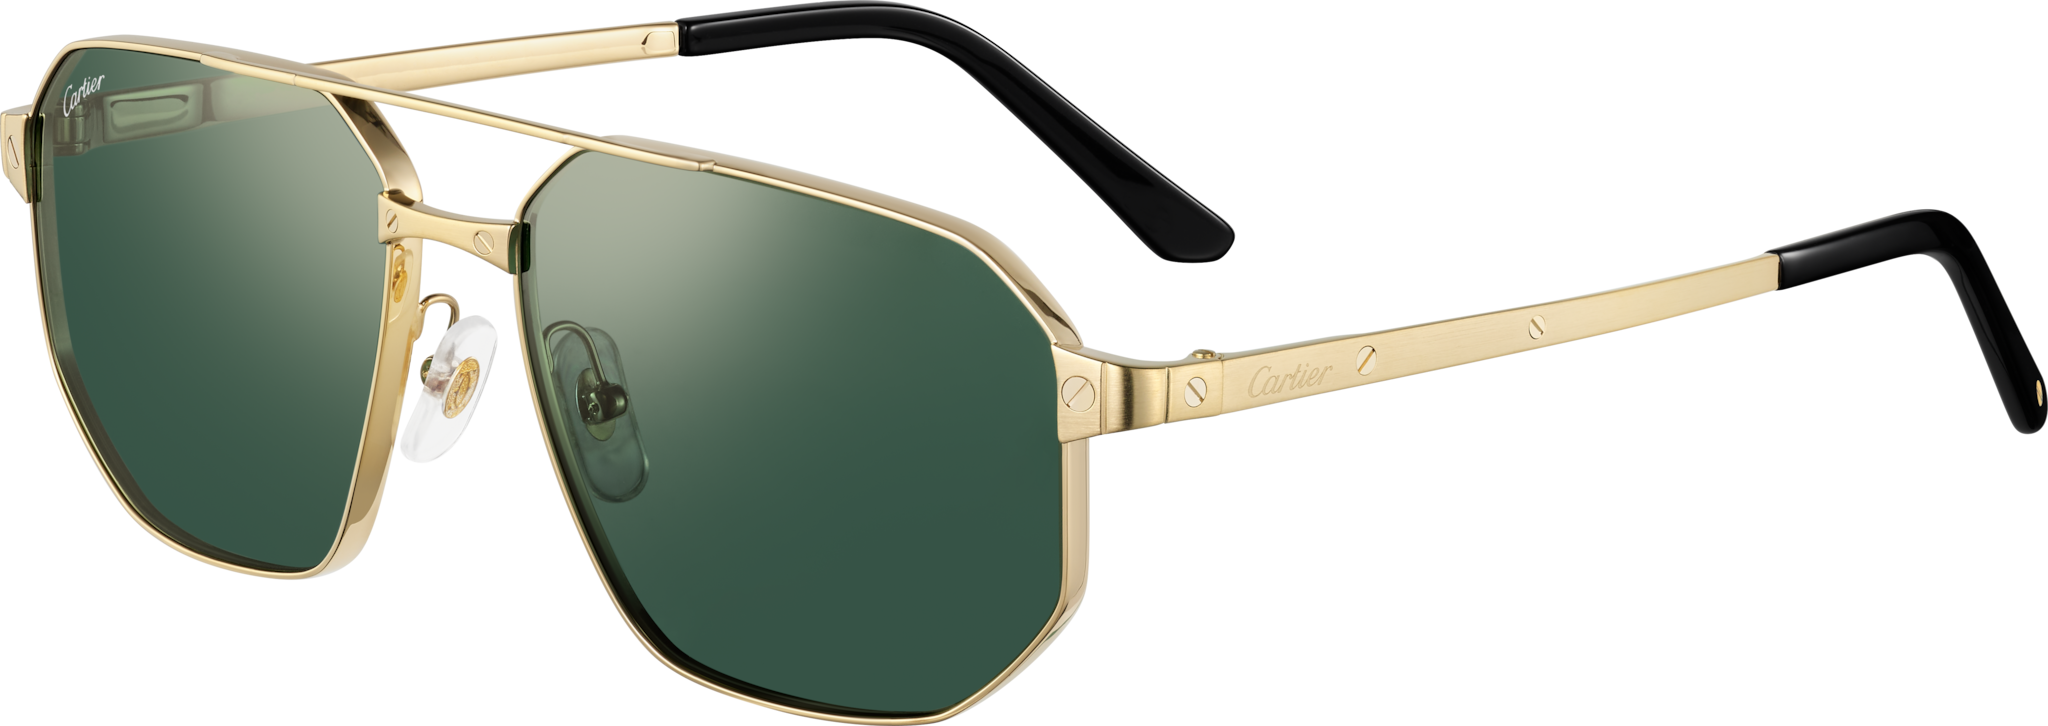 Gafas de sol Santos de CartierMetal acabado dorado liso y cepillado, lentes verdes